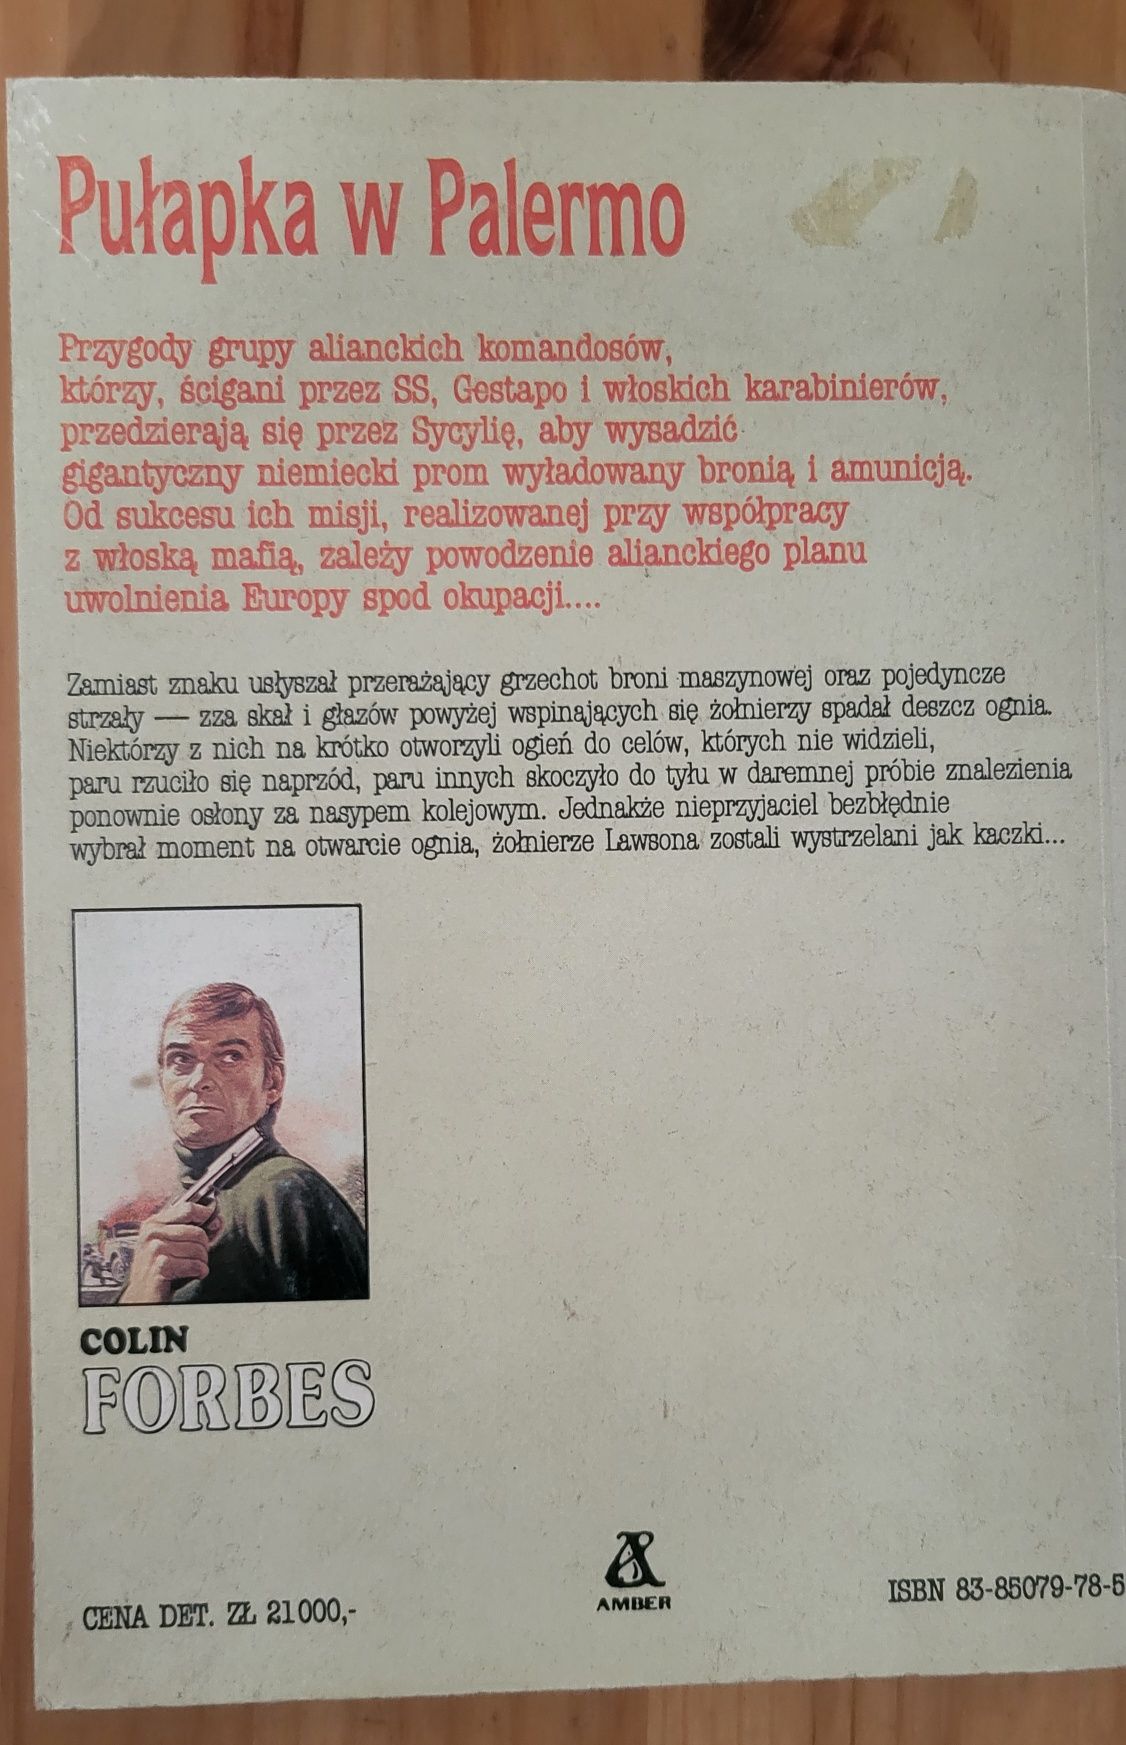 Colin Forbes Pułapka w Palermo